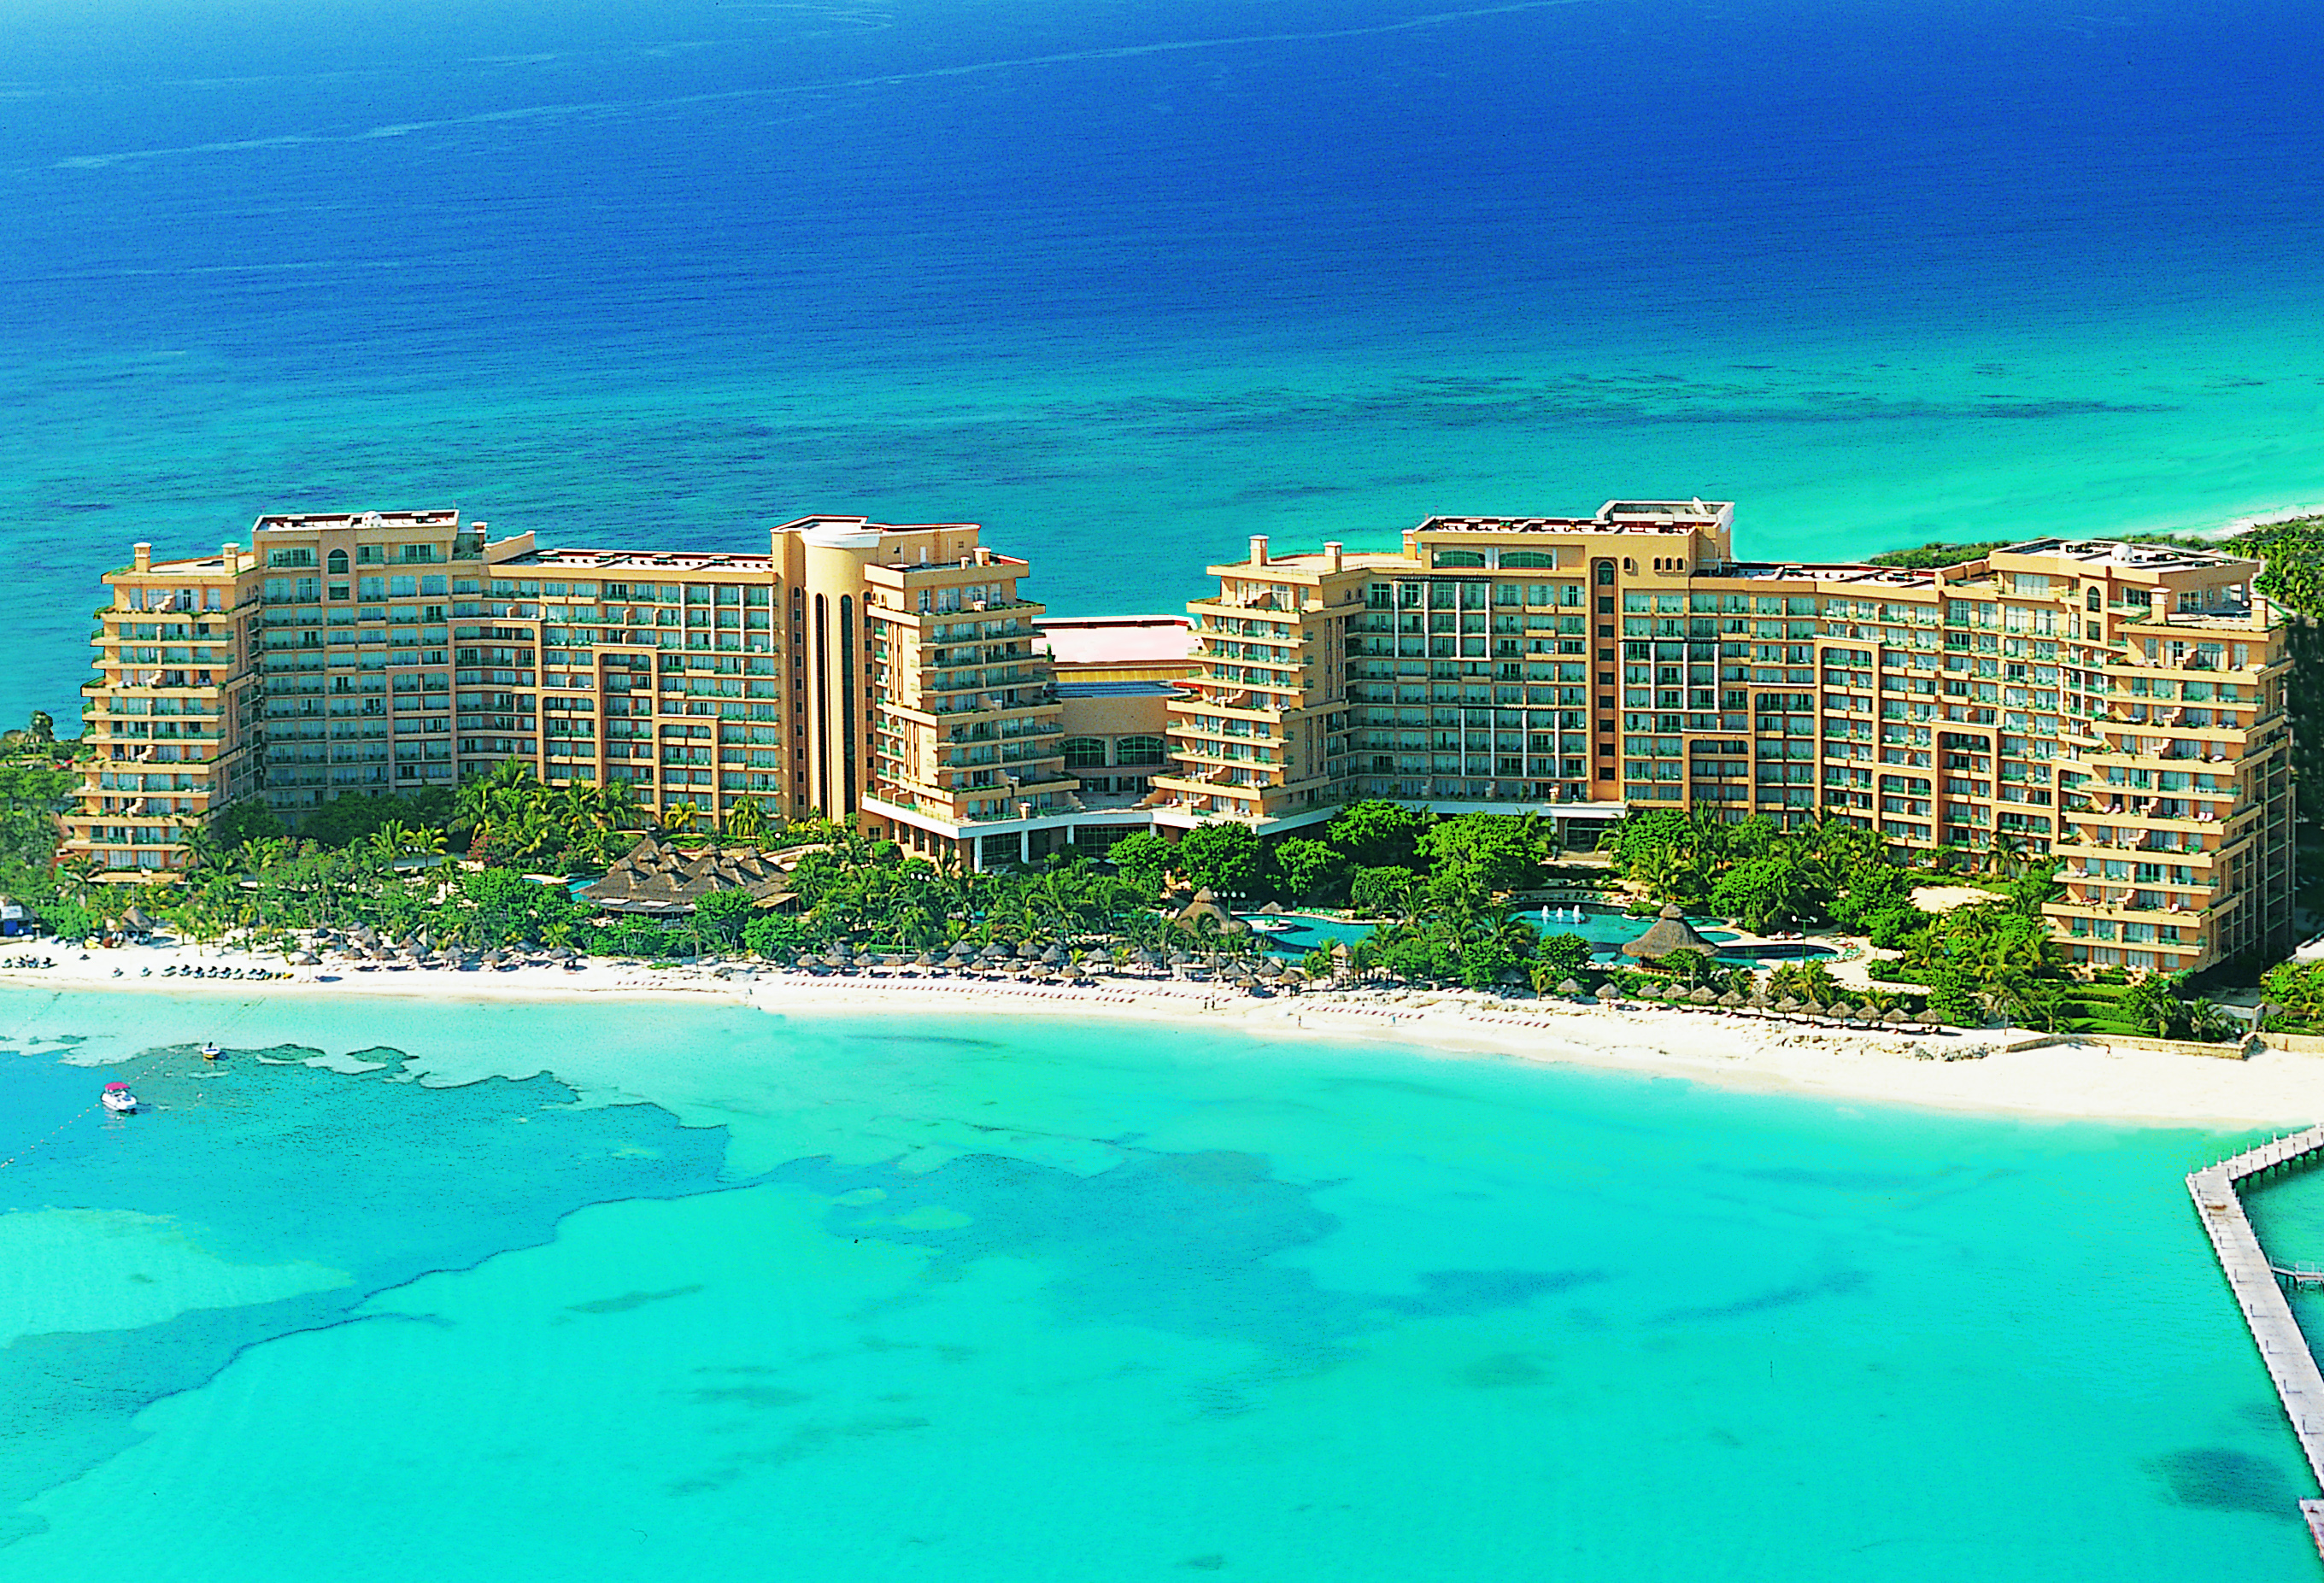 Grand Fiesta Americana Coral Beach Cancun - A Grand Slam